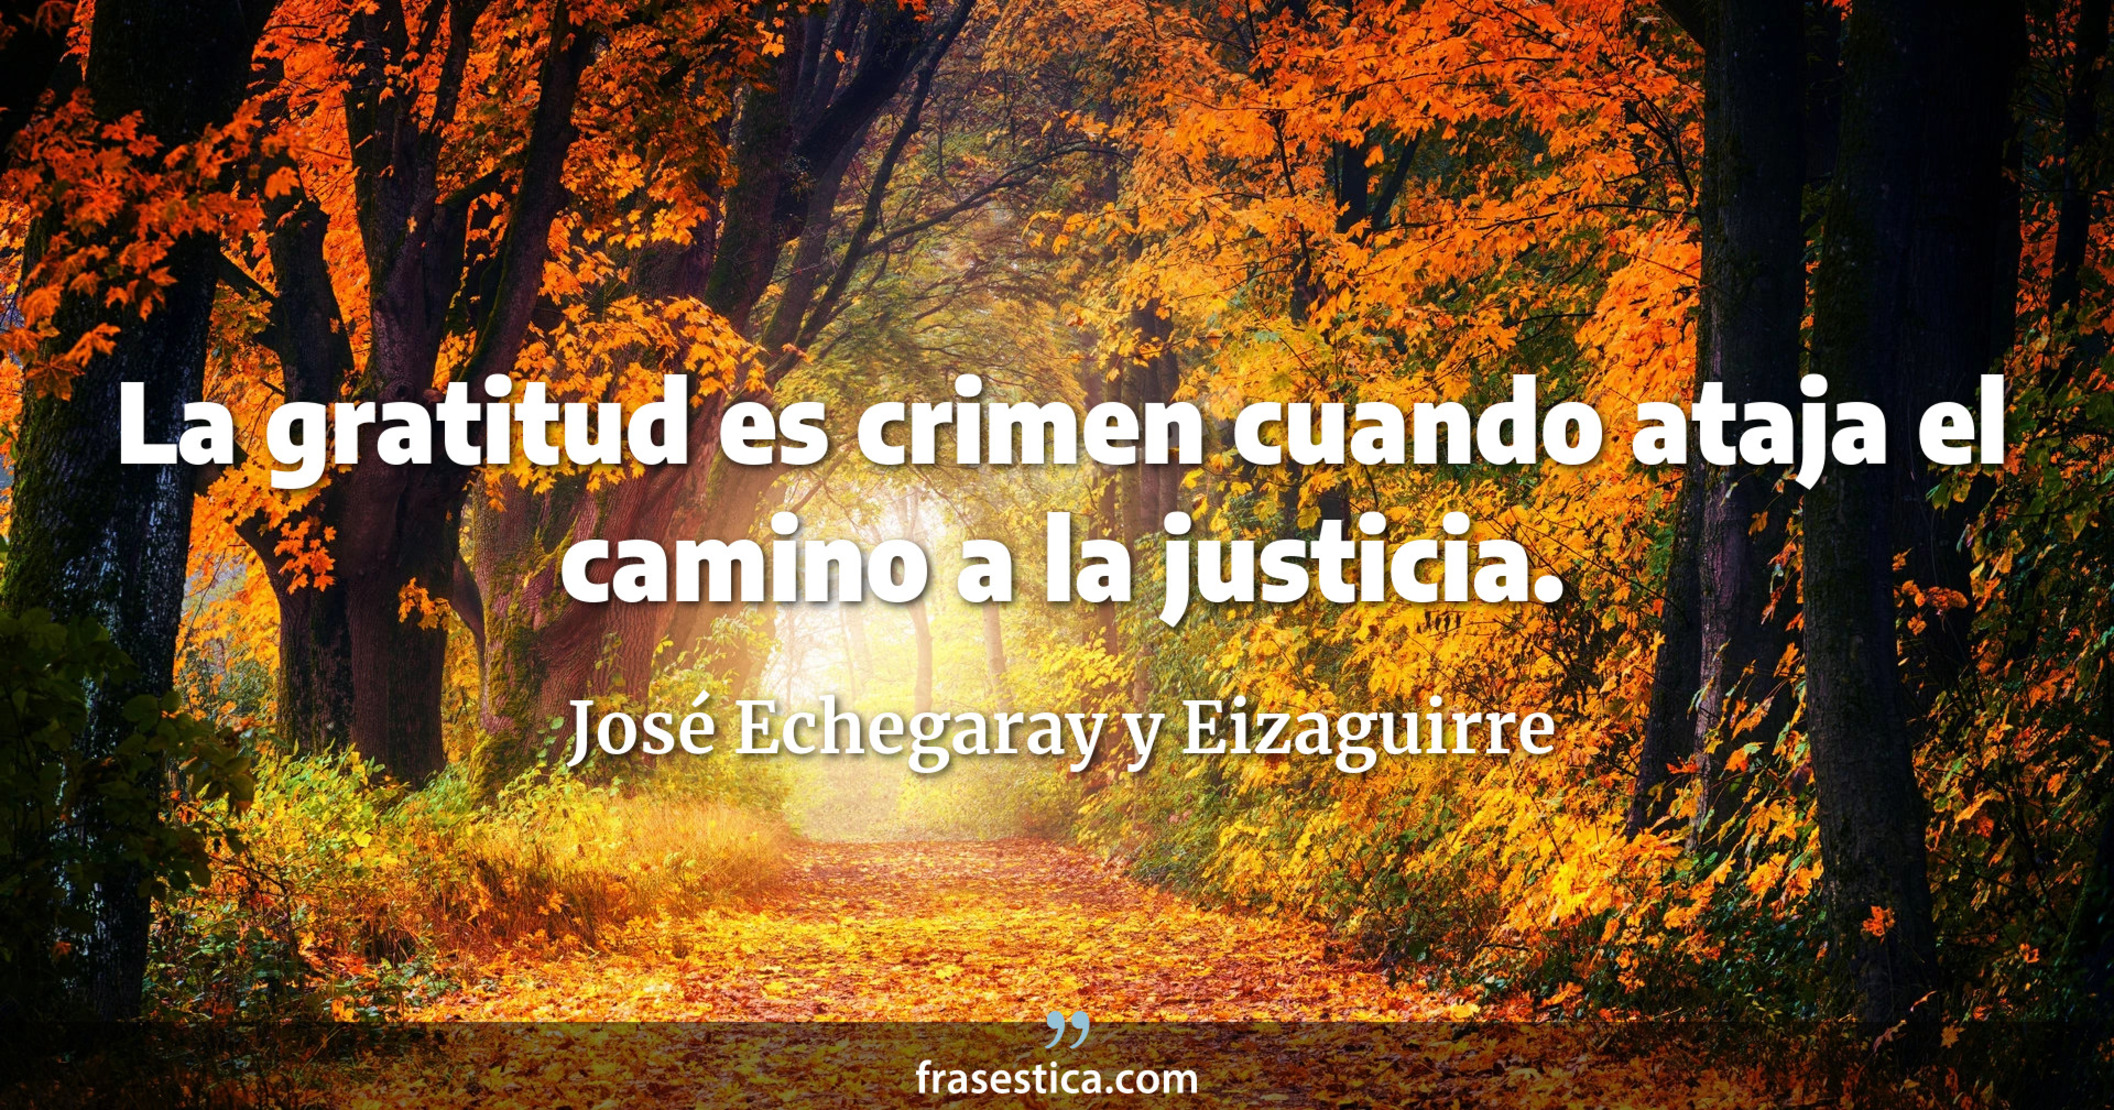 La gratitud es crimen cuando ataja el camino a la justicia. - José Echegaray y Eizaguirre